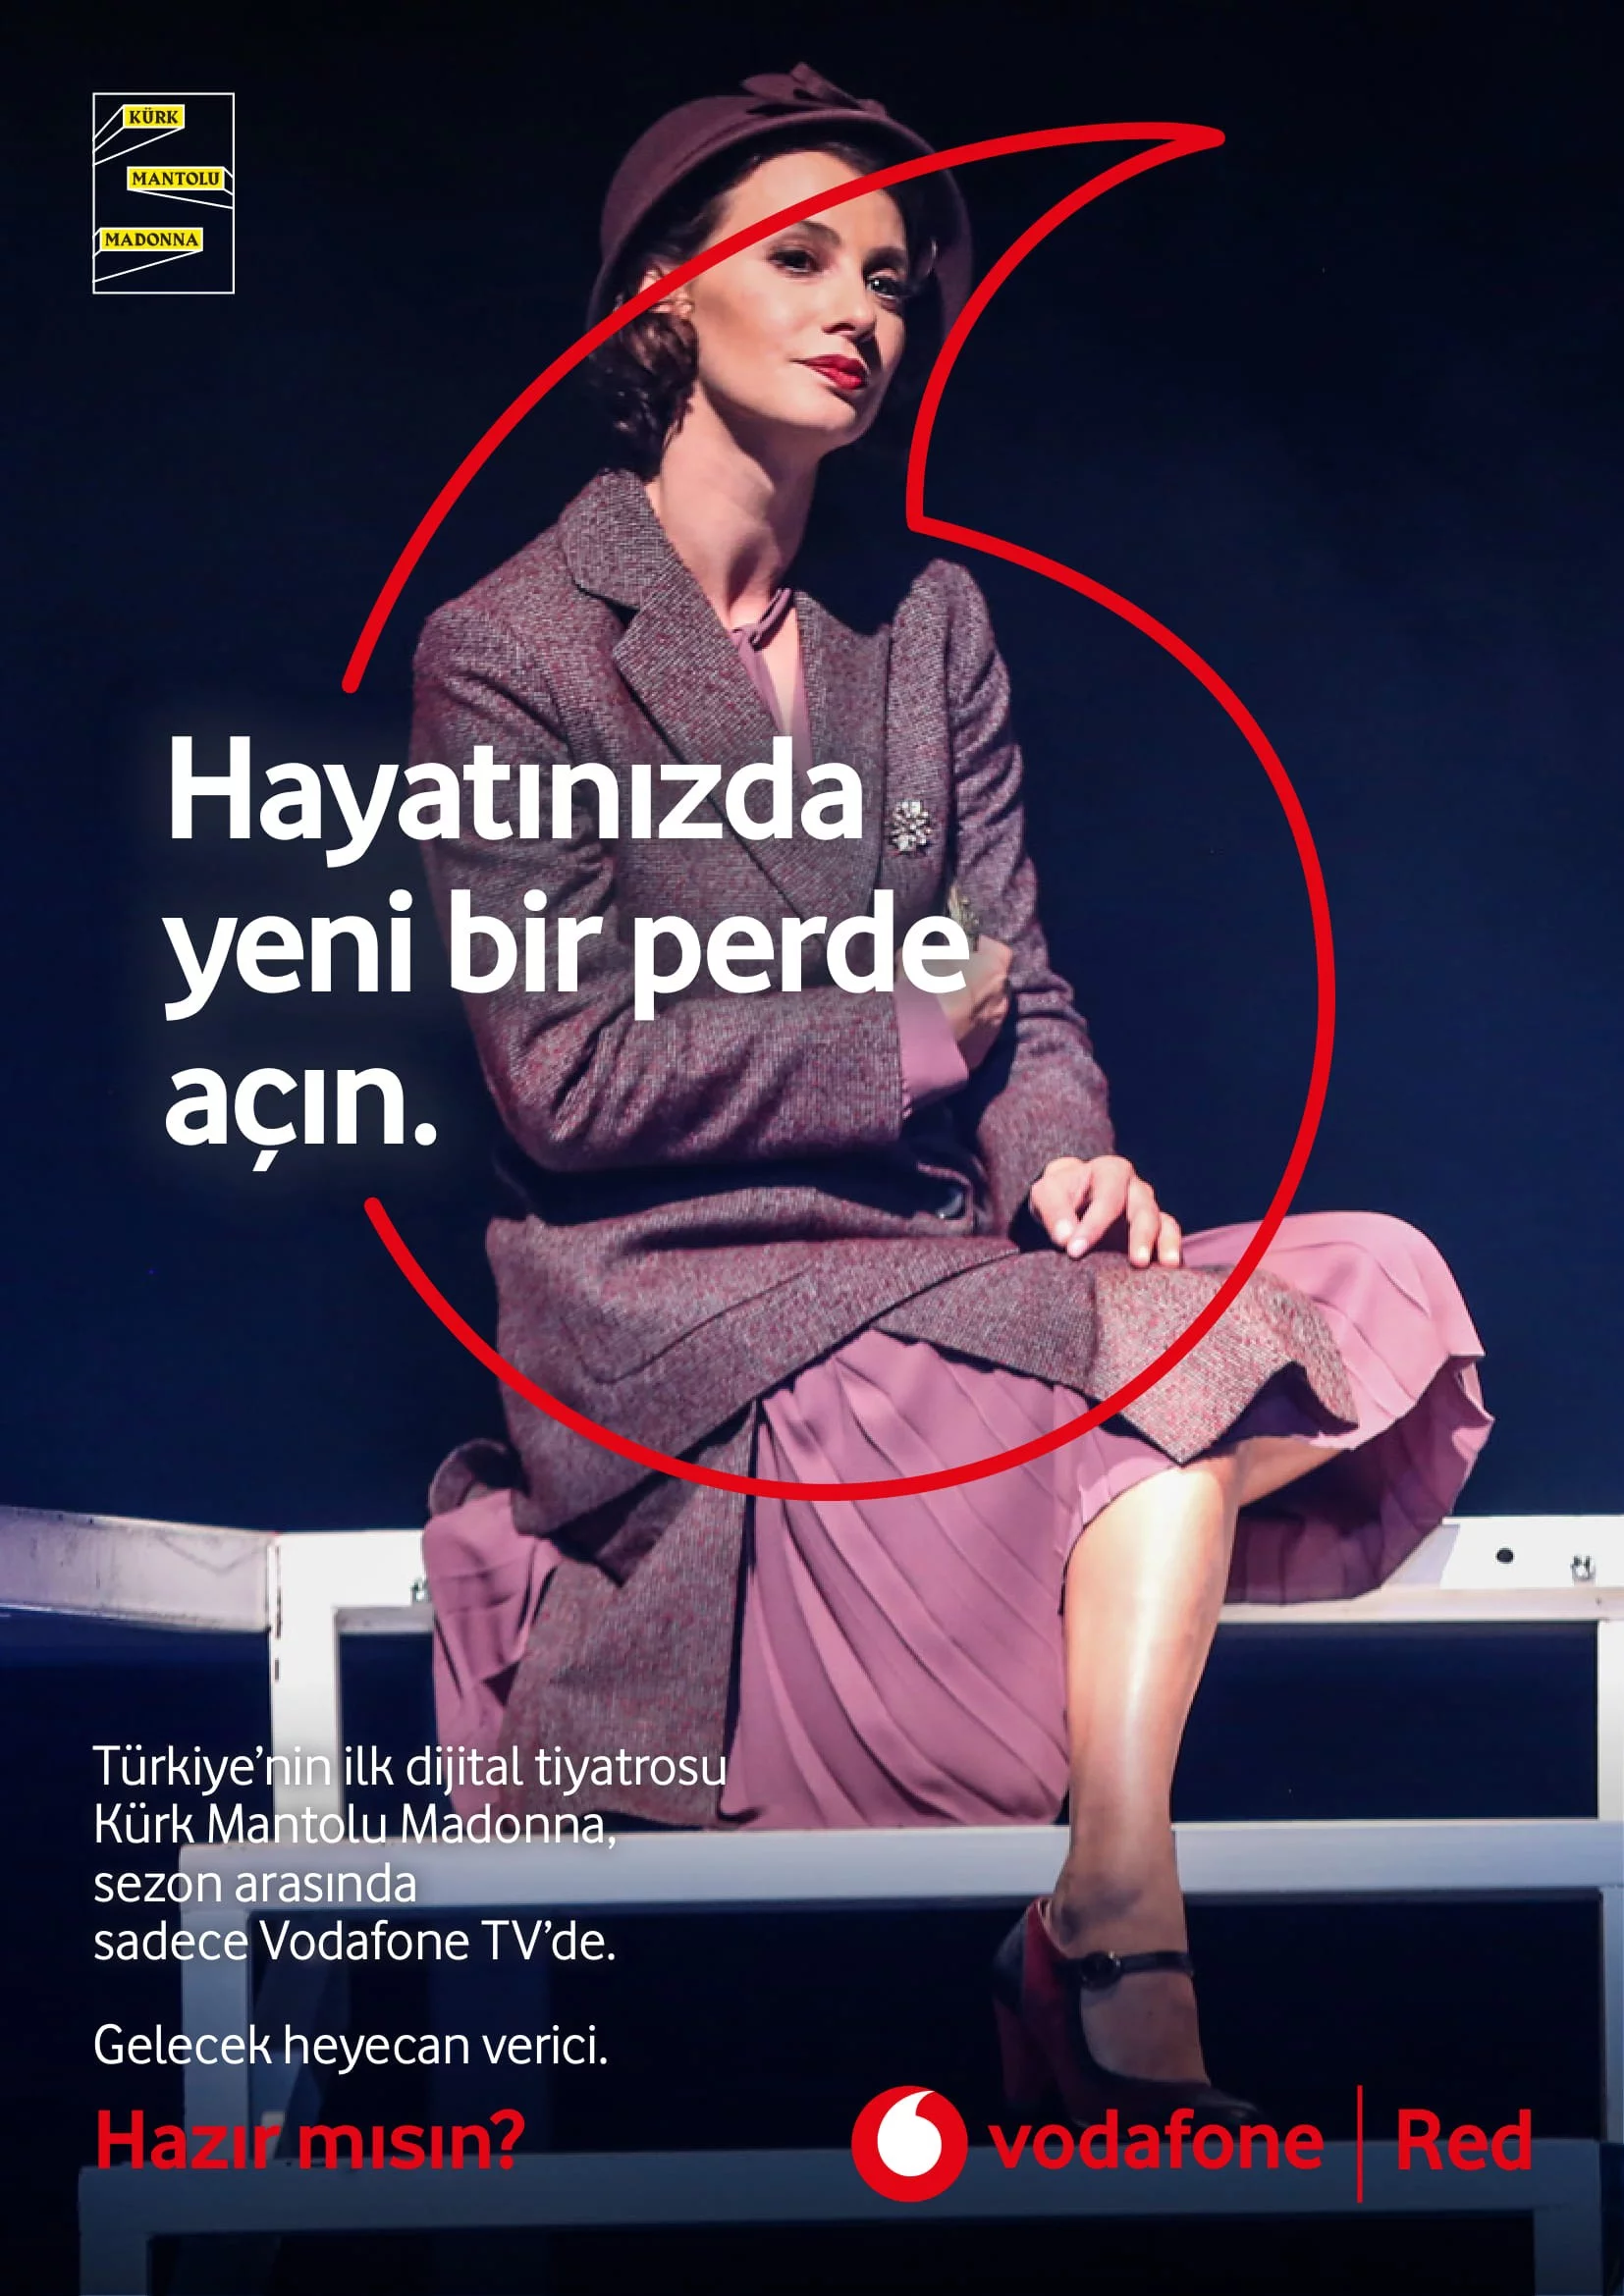 Türkiye’nin ilk dijital tiyatro oyunu 'Kürk Mantolu Madonna' Bursa’da